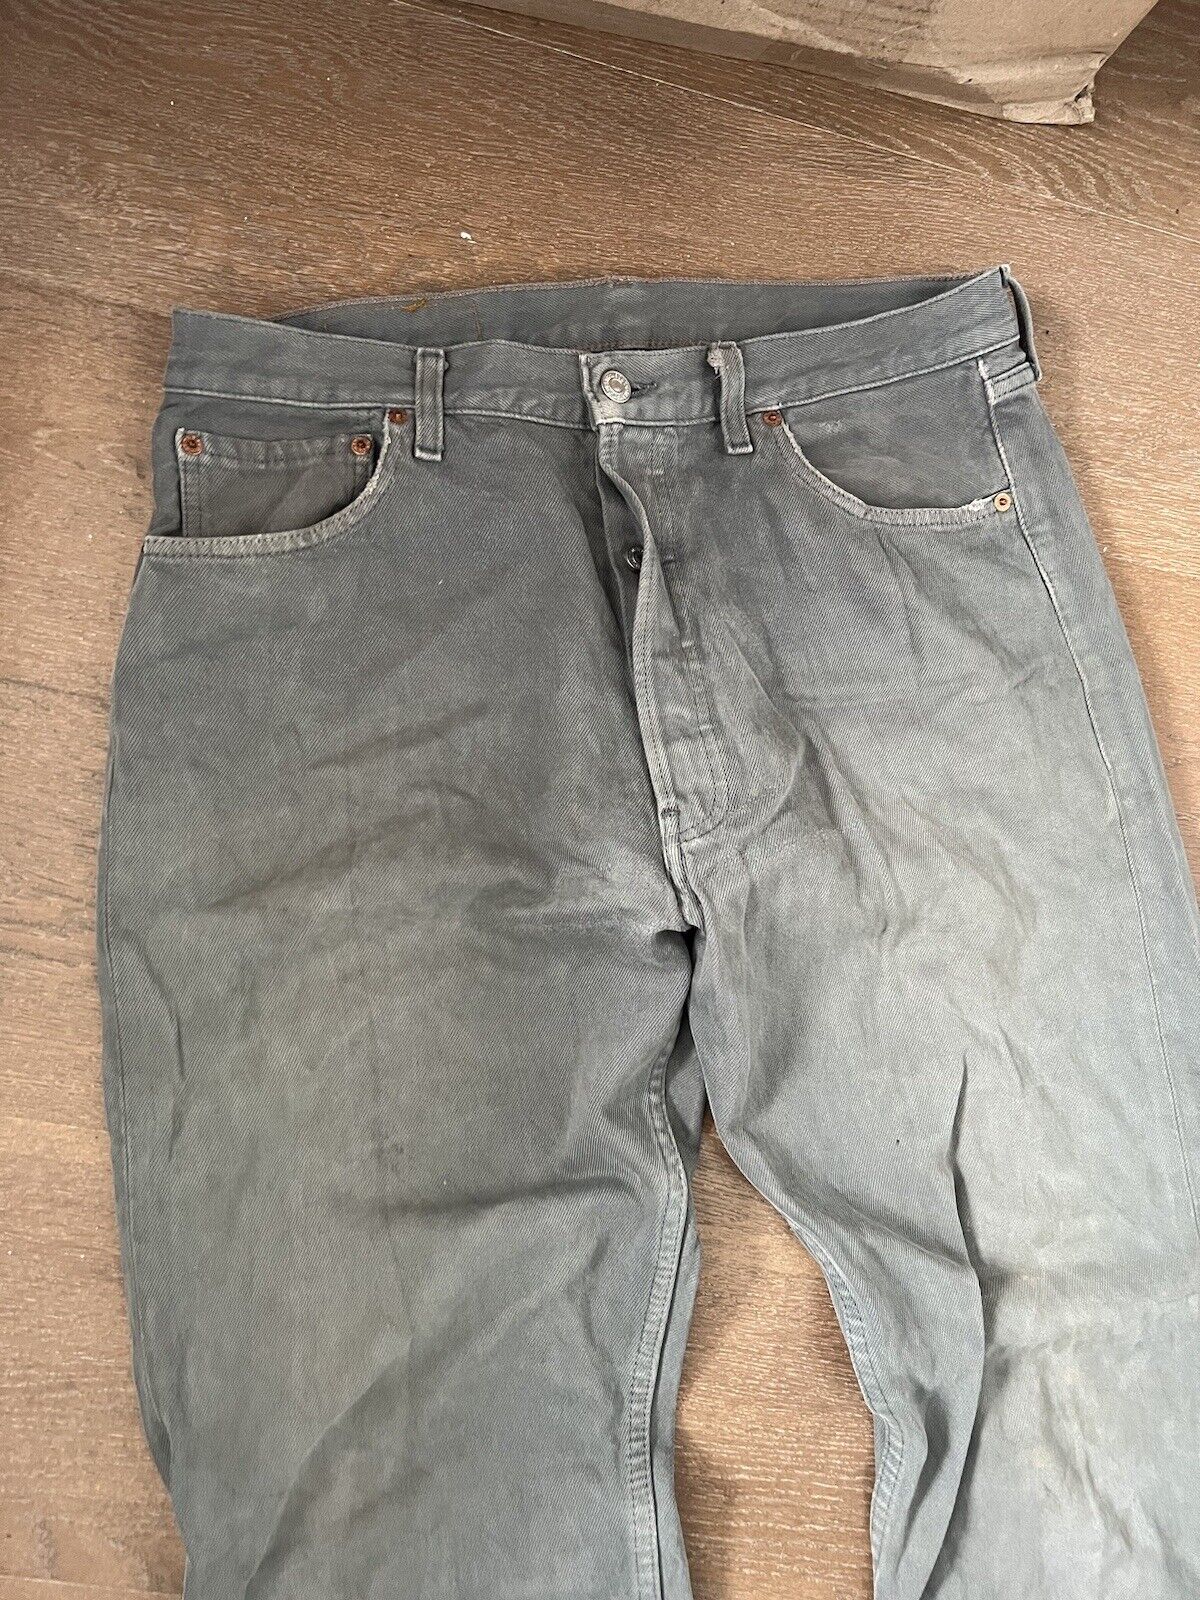 Vintage 90s Levis 501 33x31 Denim Jeans Faded Lig… - image 2